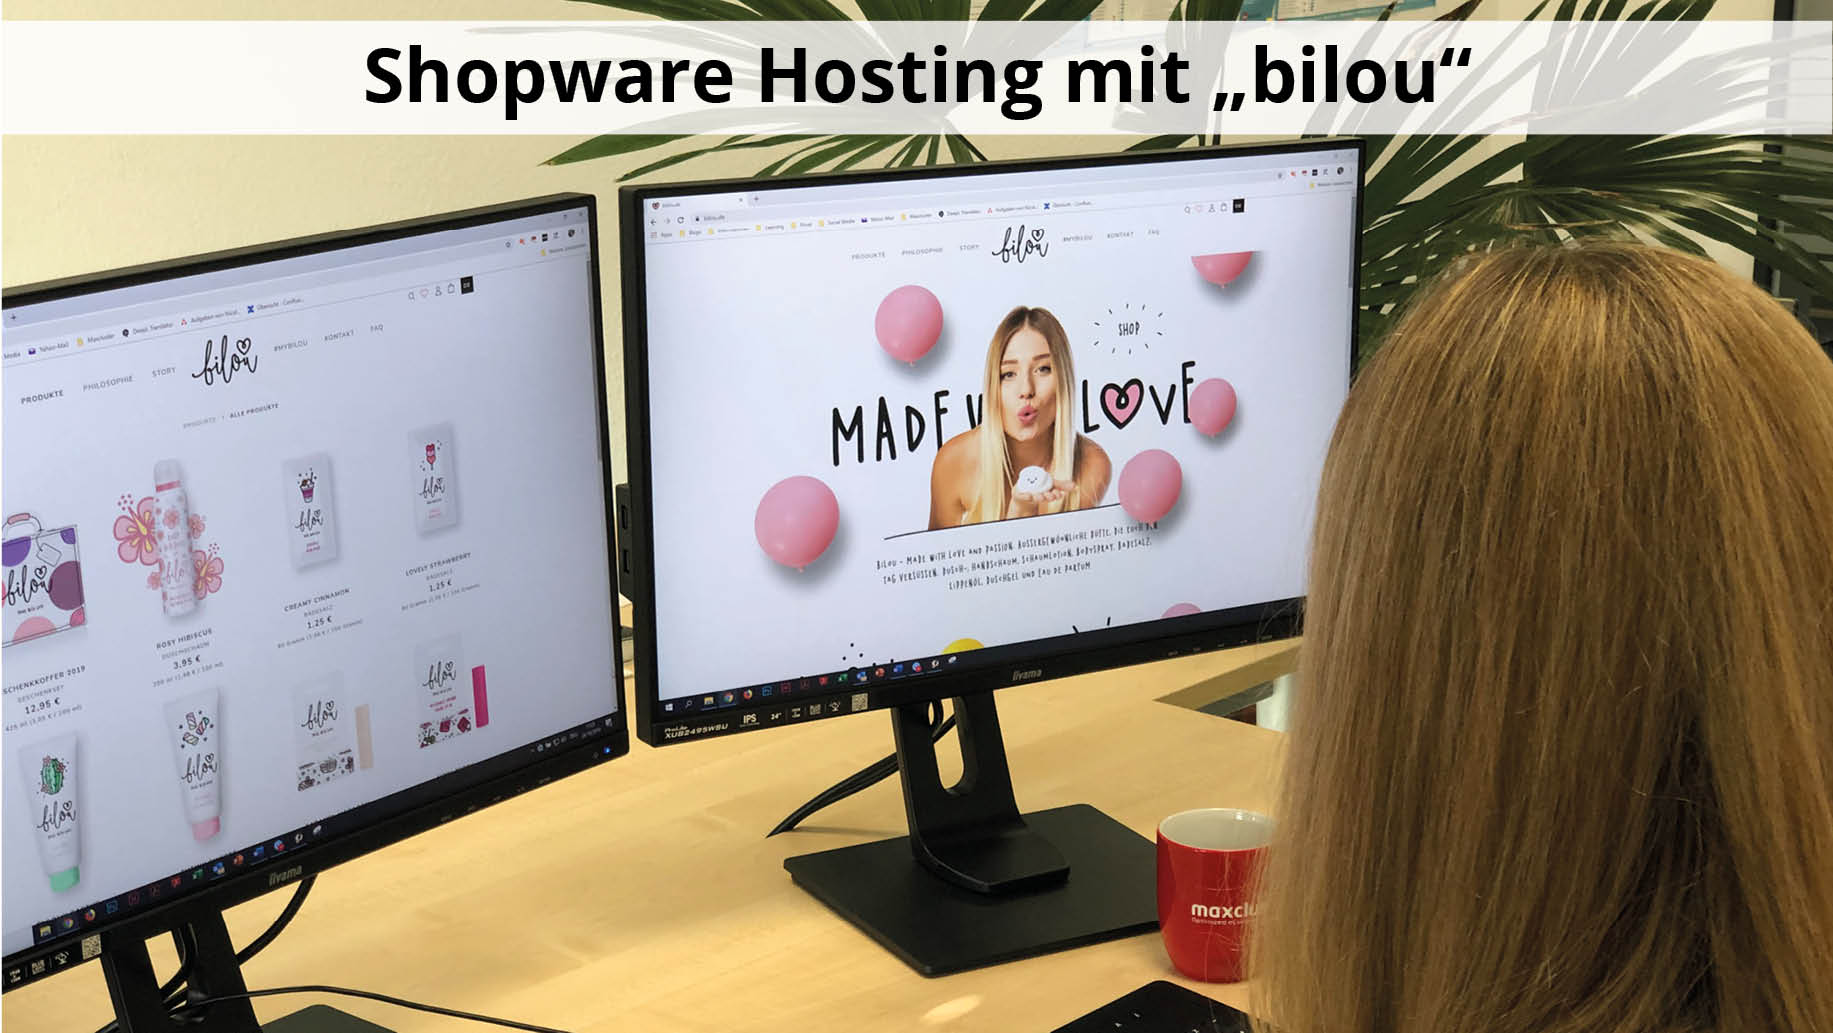 Shopware Hosting mit "bilou" - Performance Optimierung mit Agentur Kellerkinder